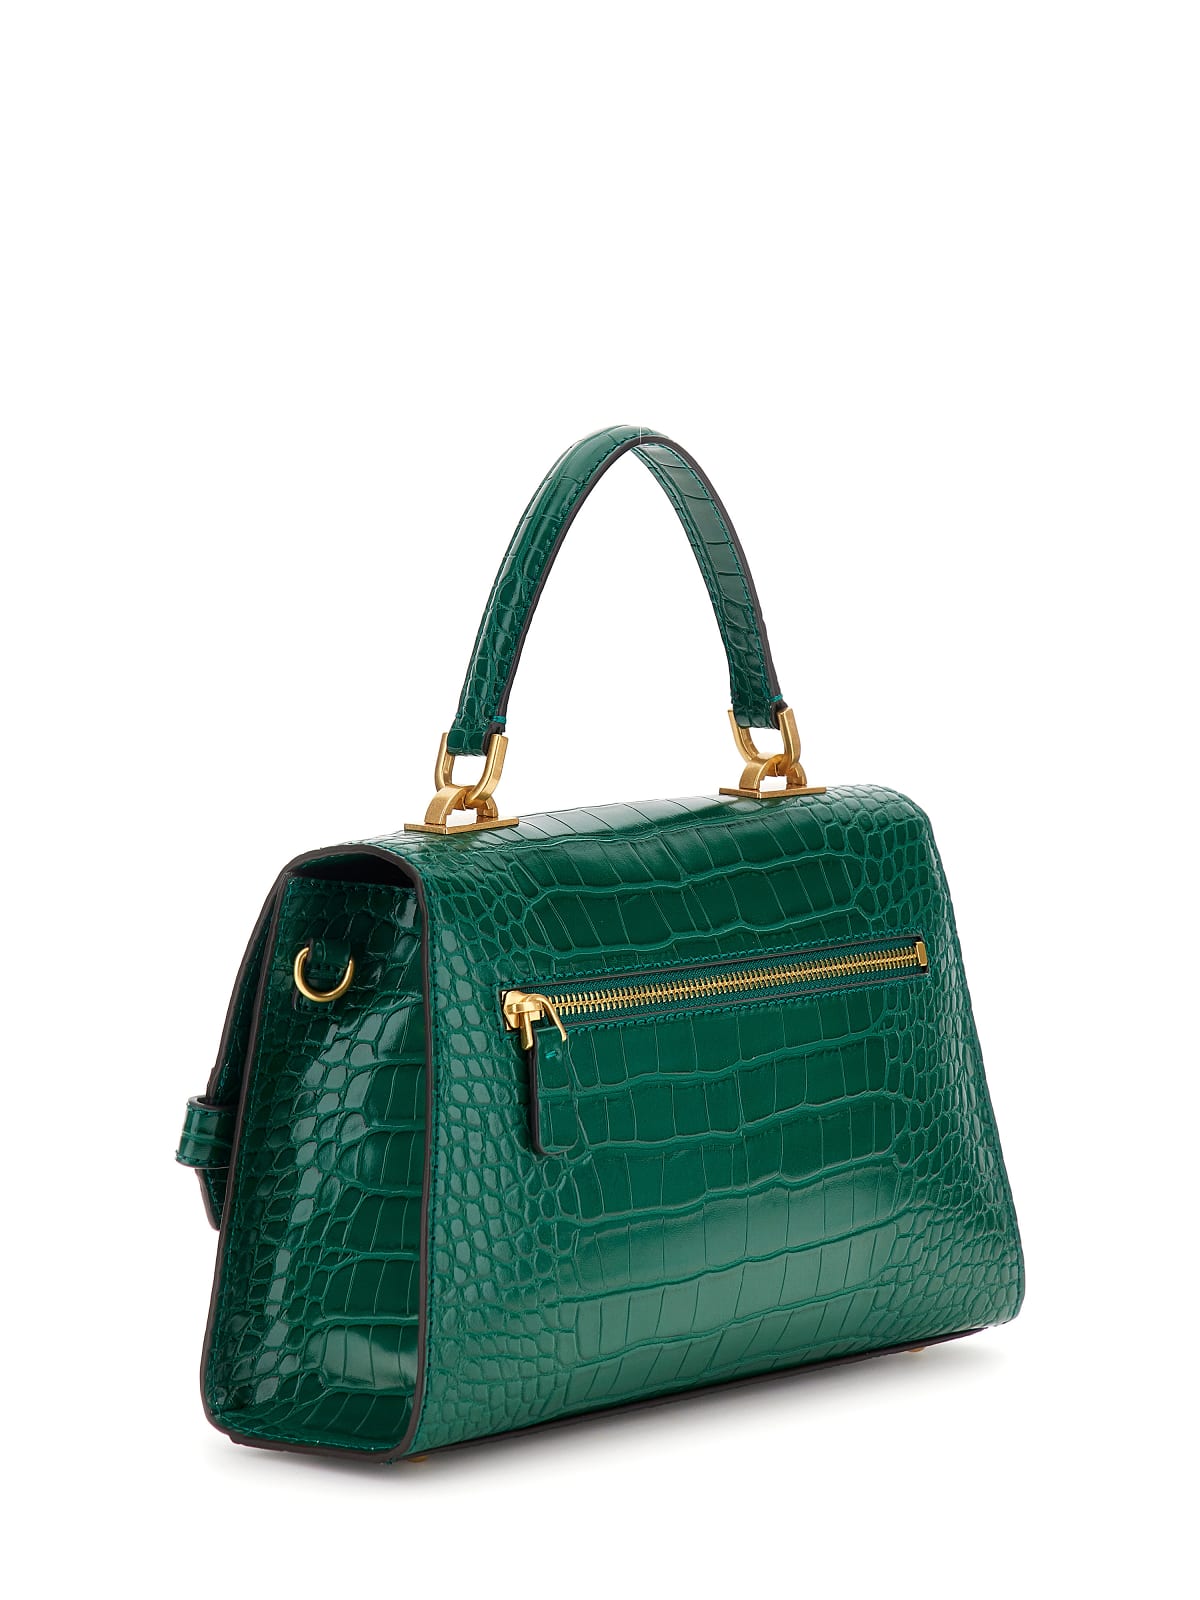 Sac Bandoulière Guess Sestri Luxury Satchel Emerald CX898520